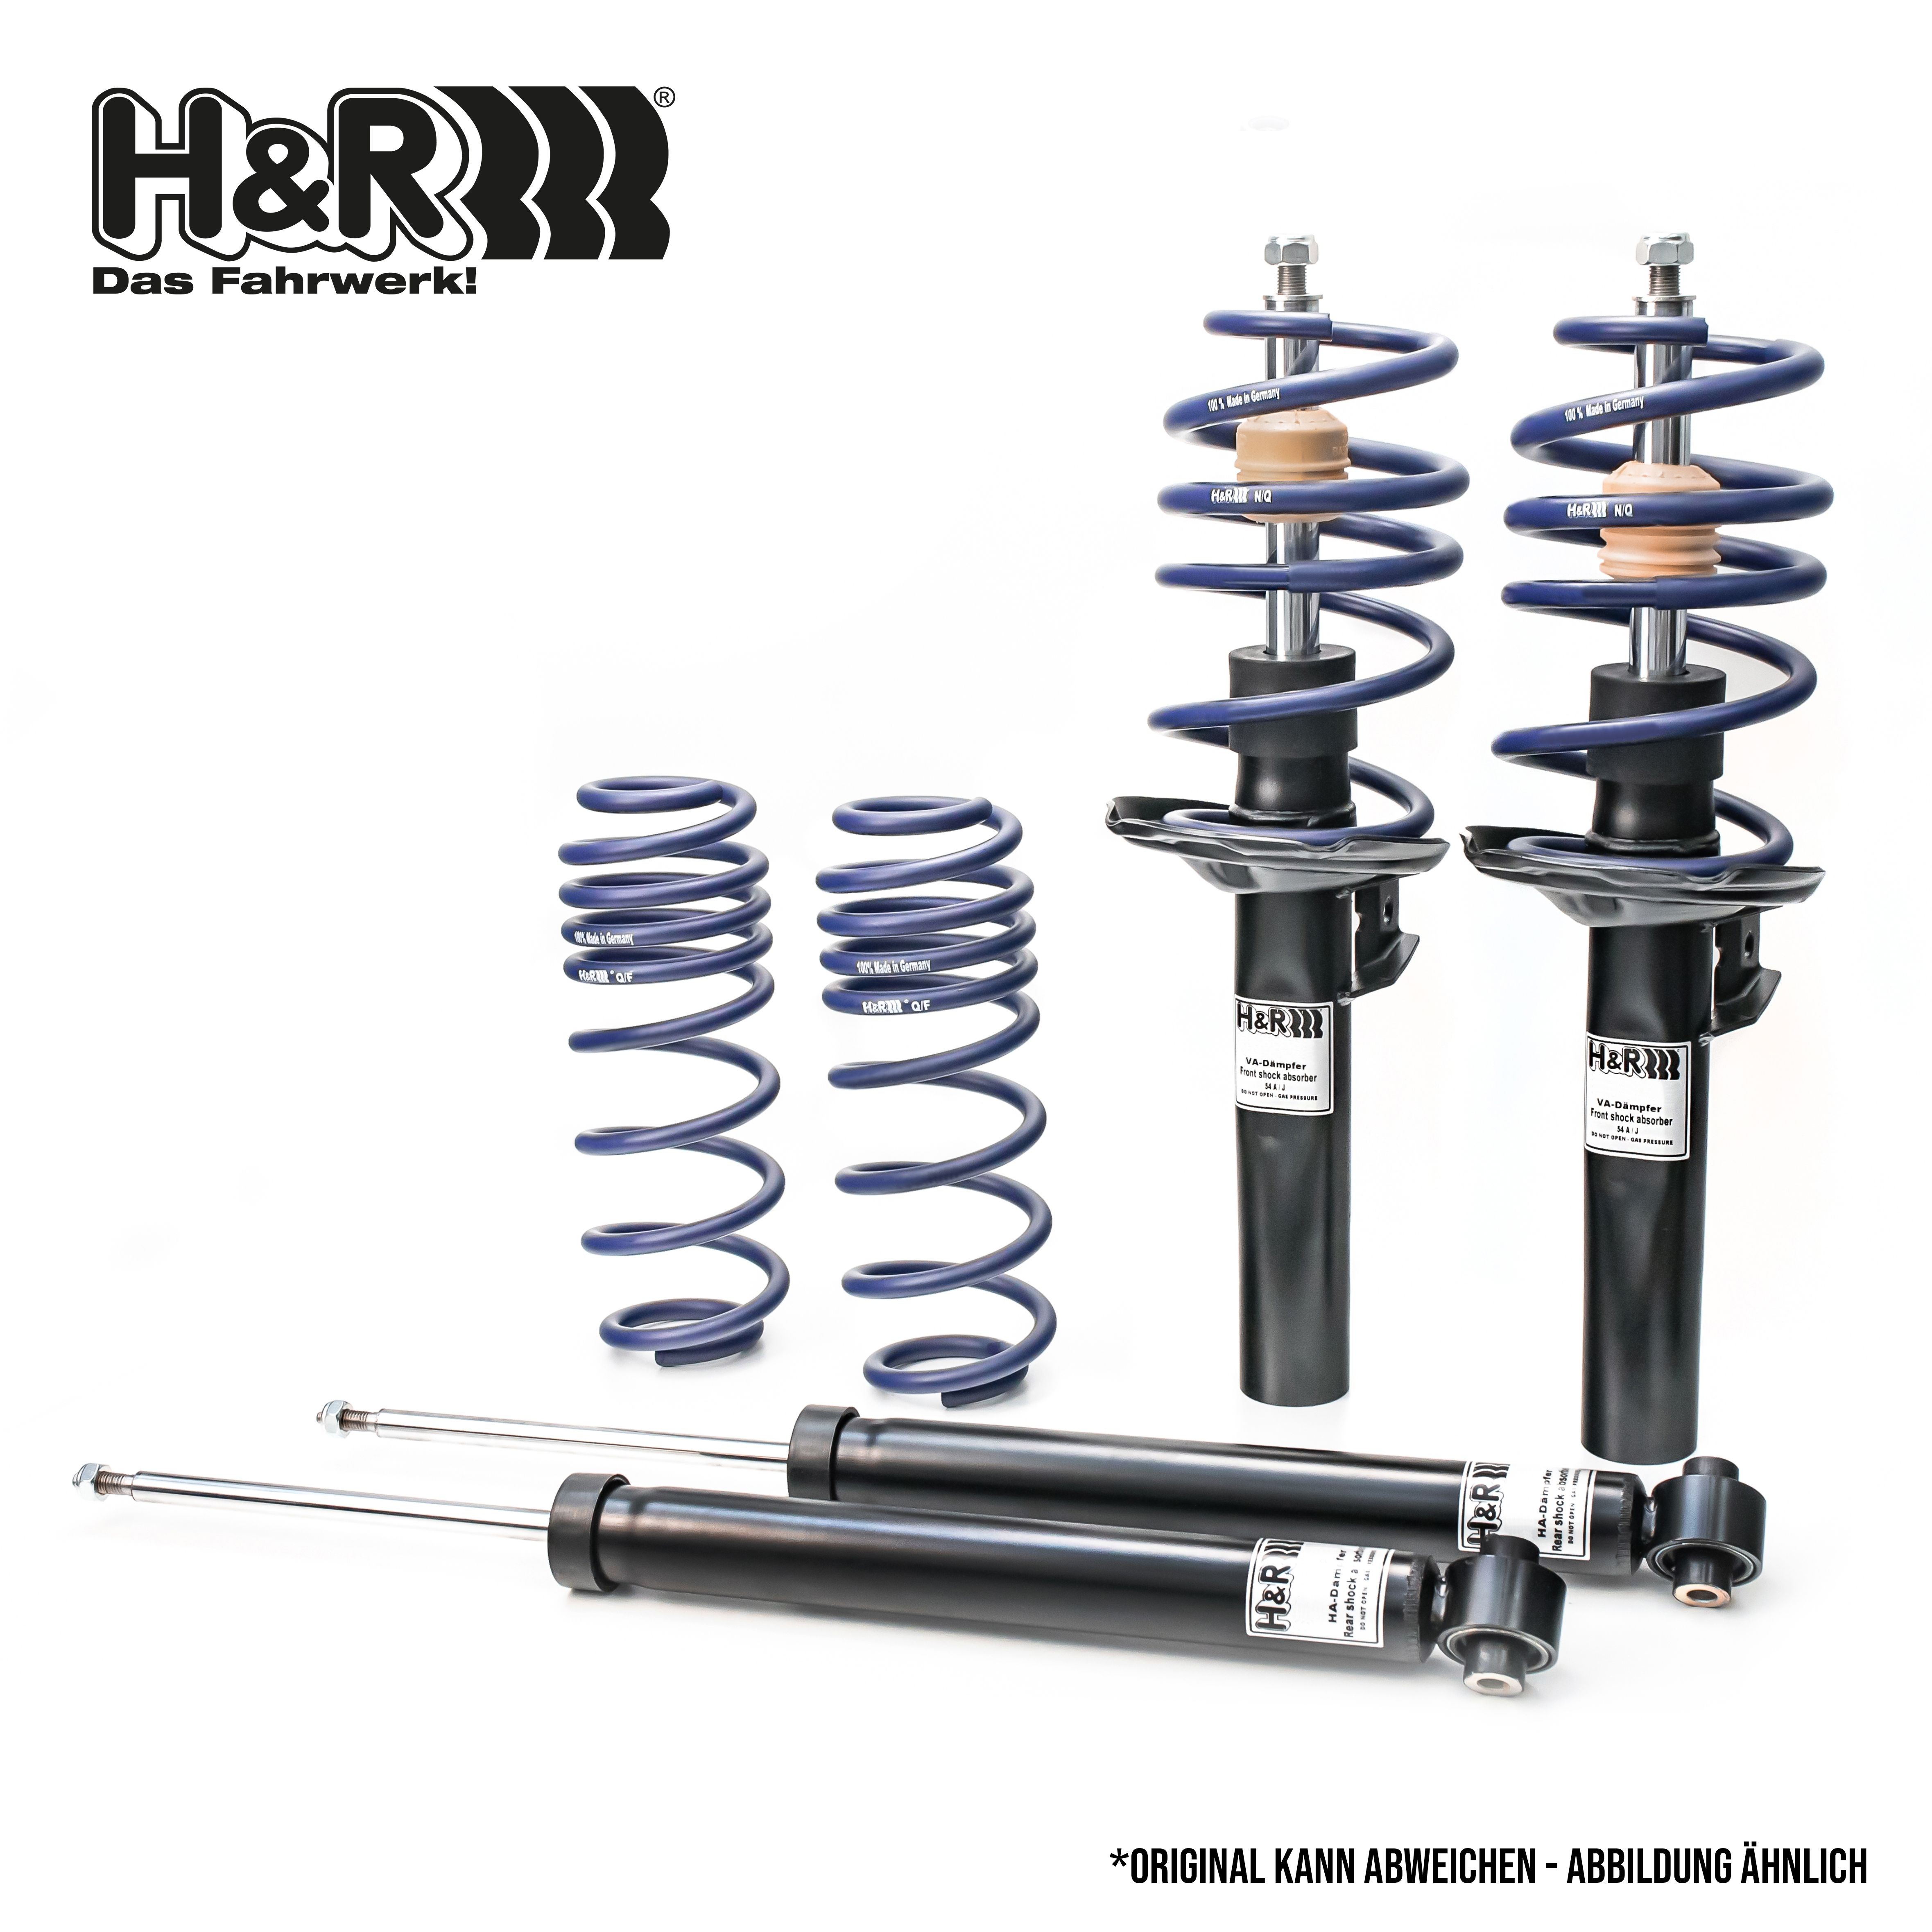 H&R Shock absorber set 40555-2 buy